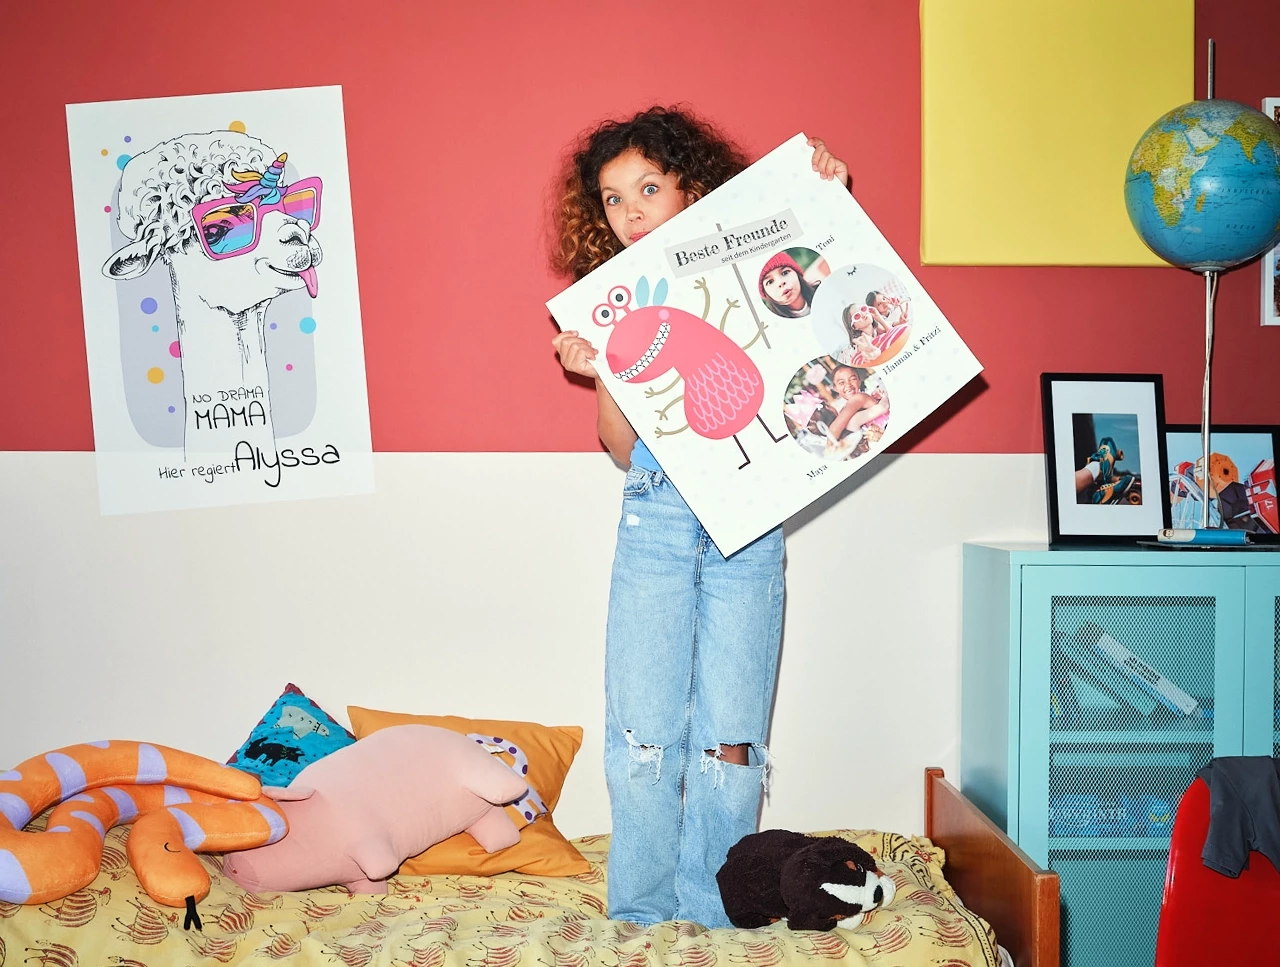 Kind im Kinderzimmer auf Bett mit Kuscheltieren stehend mit lustigem Posterdruck in der Hand hochhaltend mit 